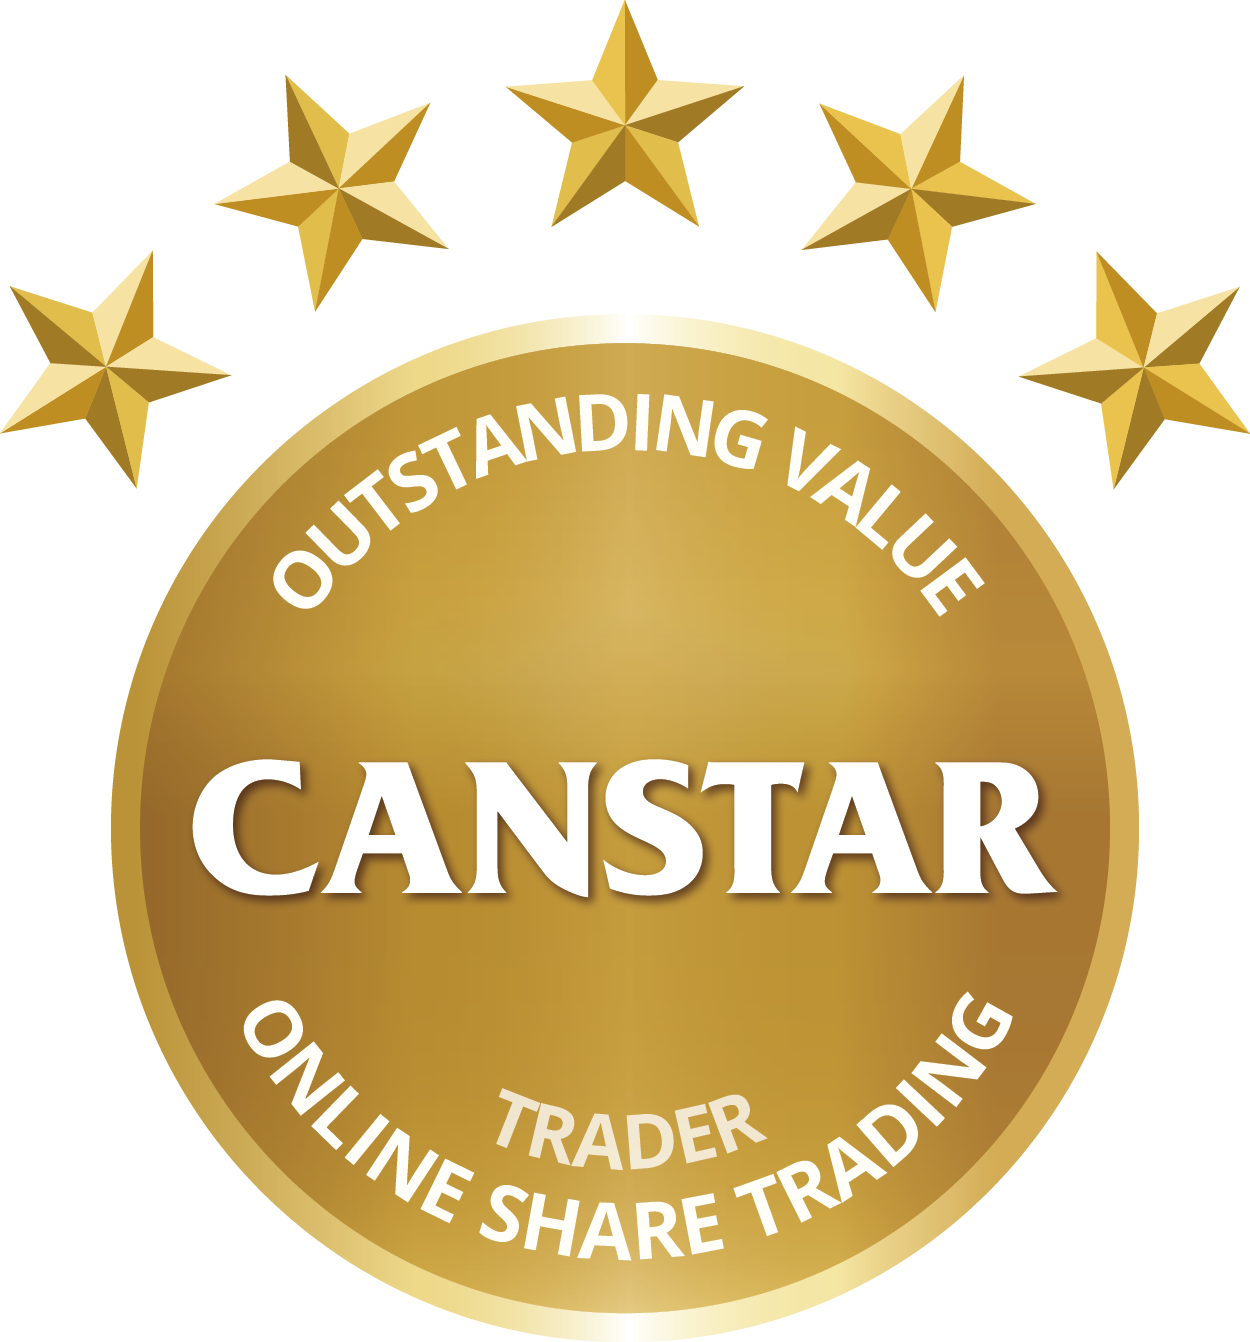 Prix Canstar Rentabilité exceptionnelle pour les traders